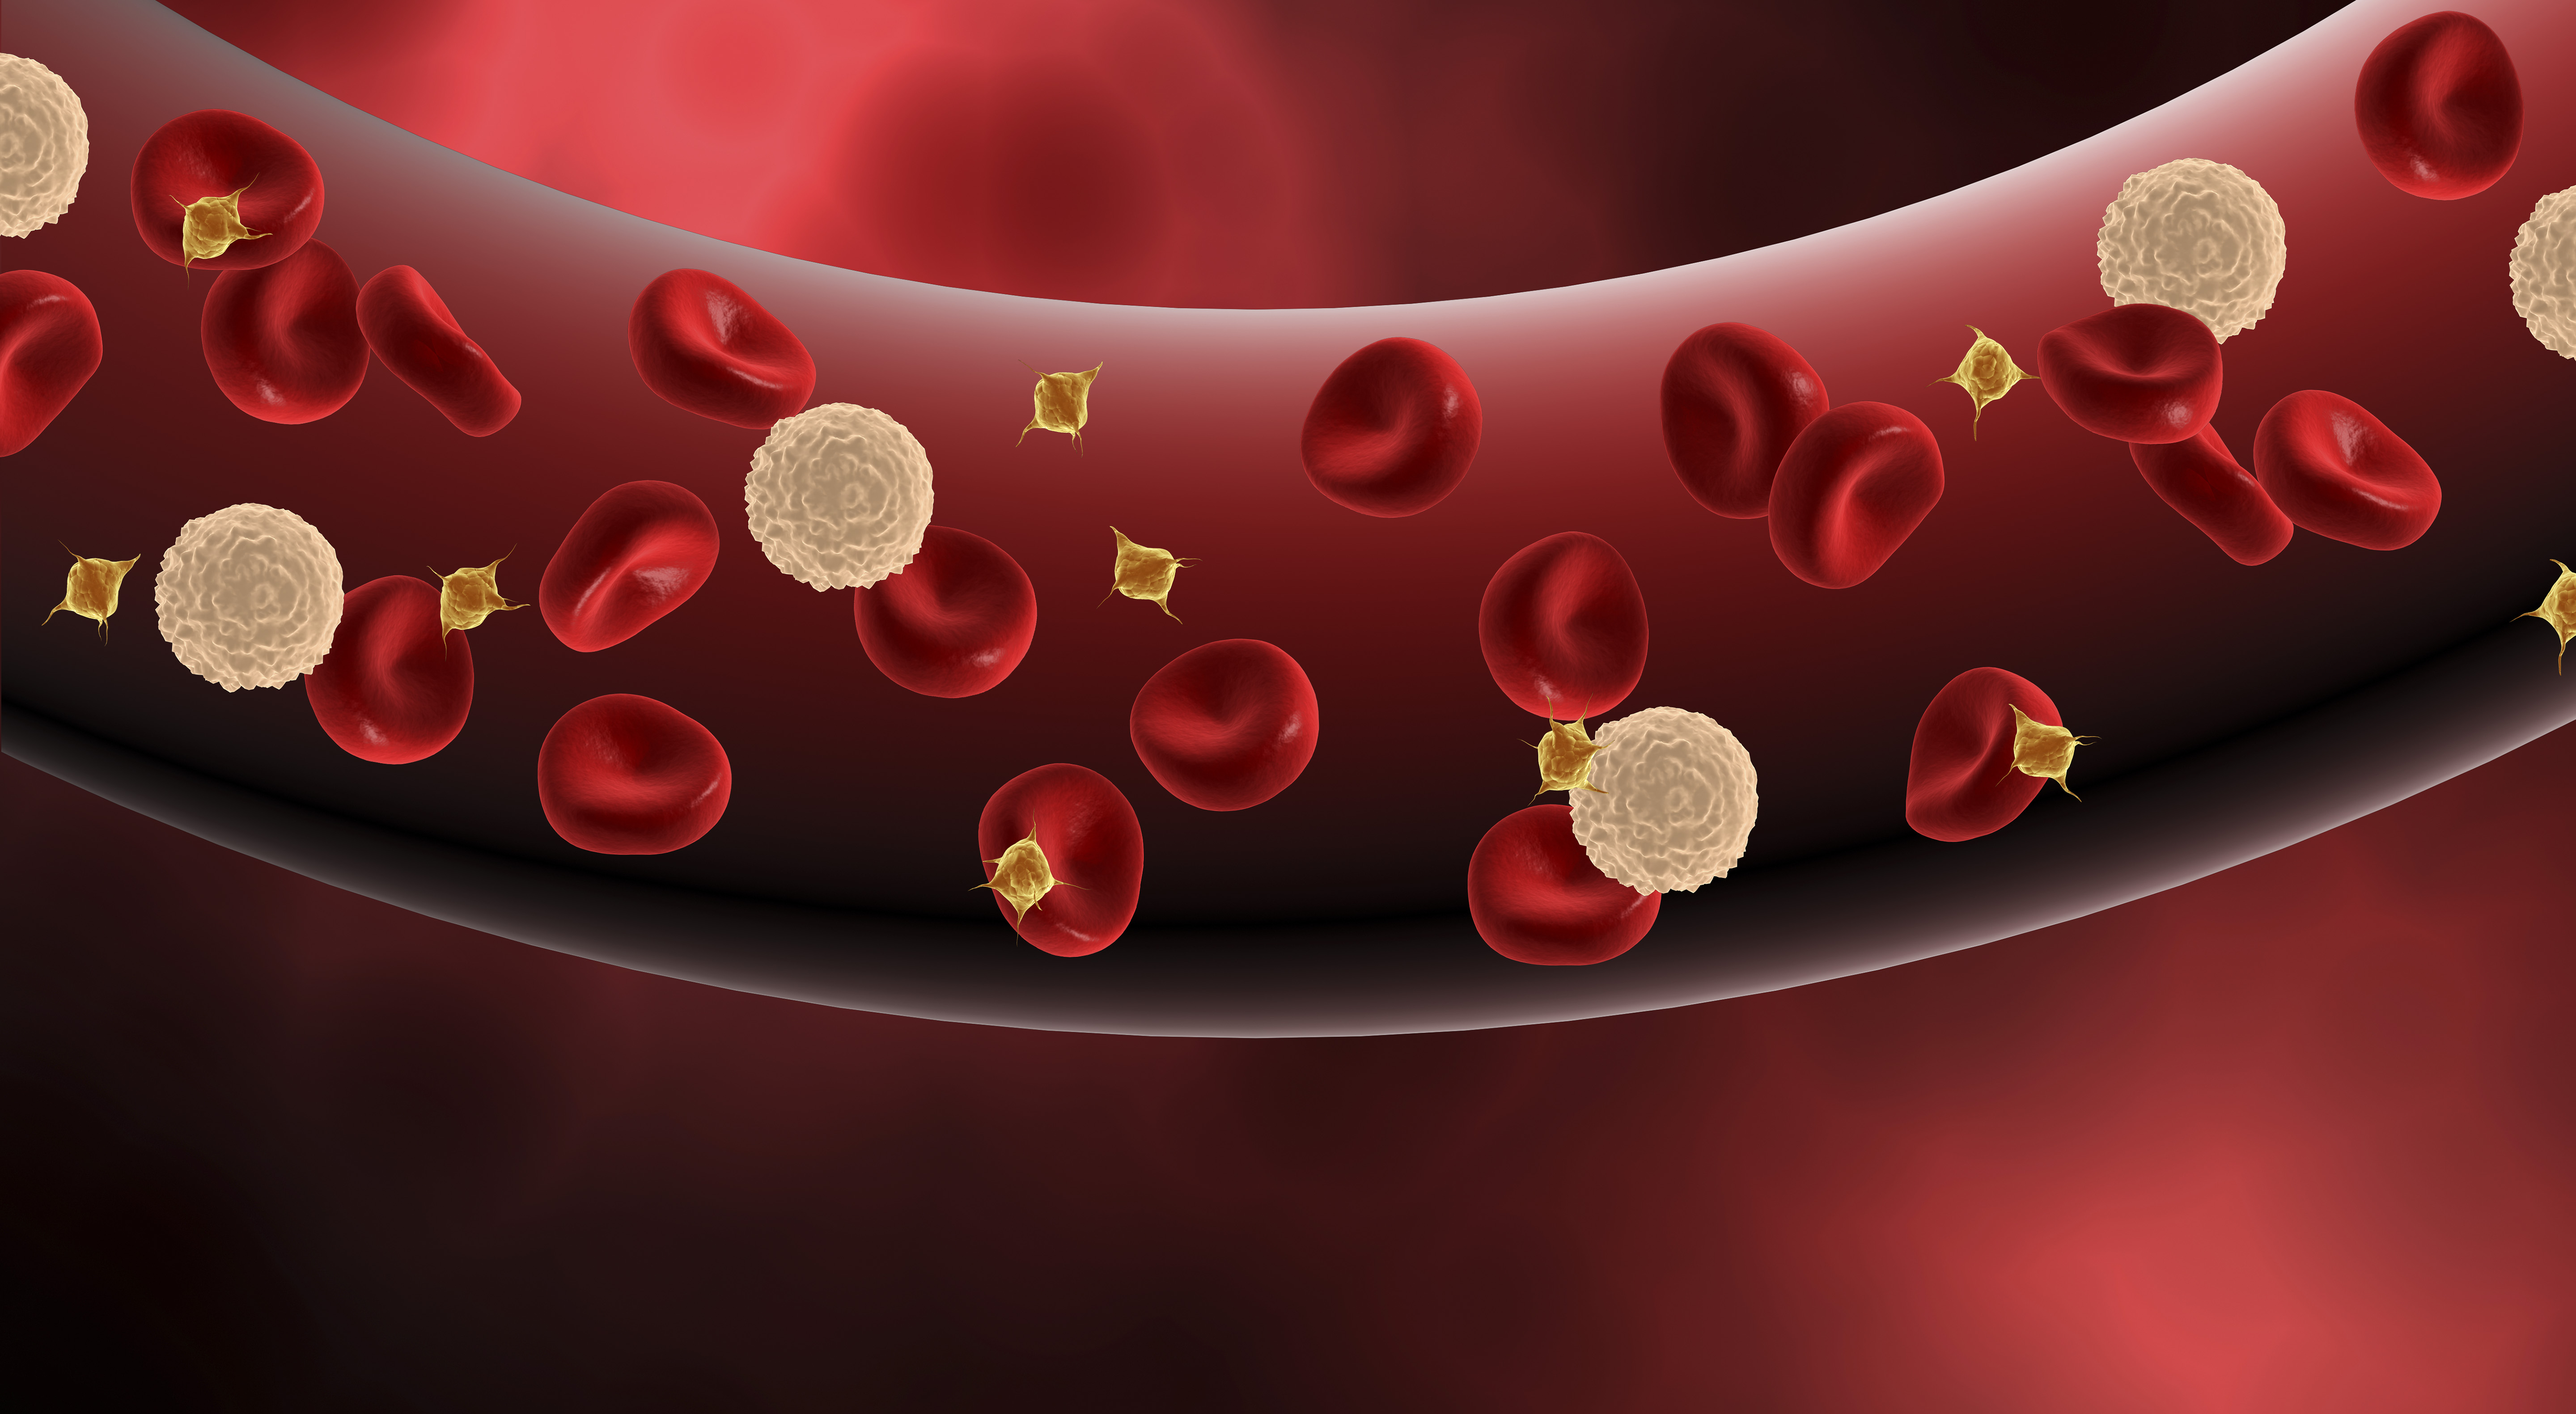 3,对造血功能的影响:因为骨髓造血细胞处于高速分化的过程中,化疗药物